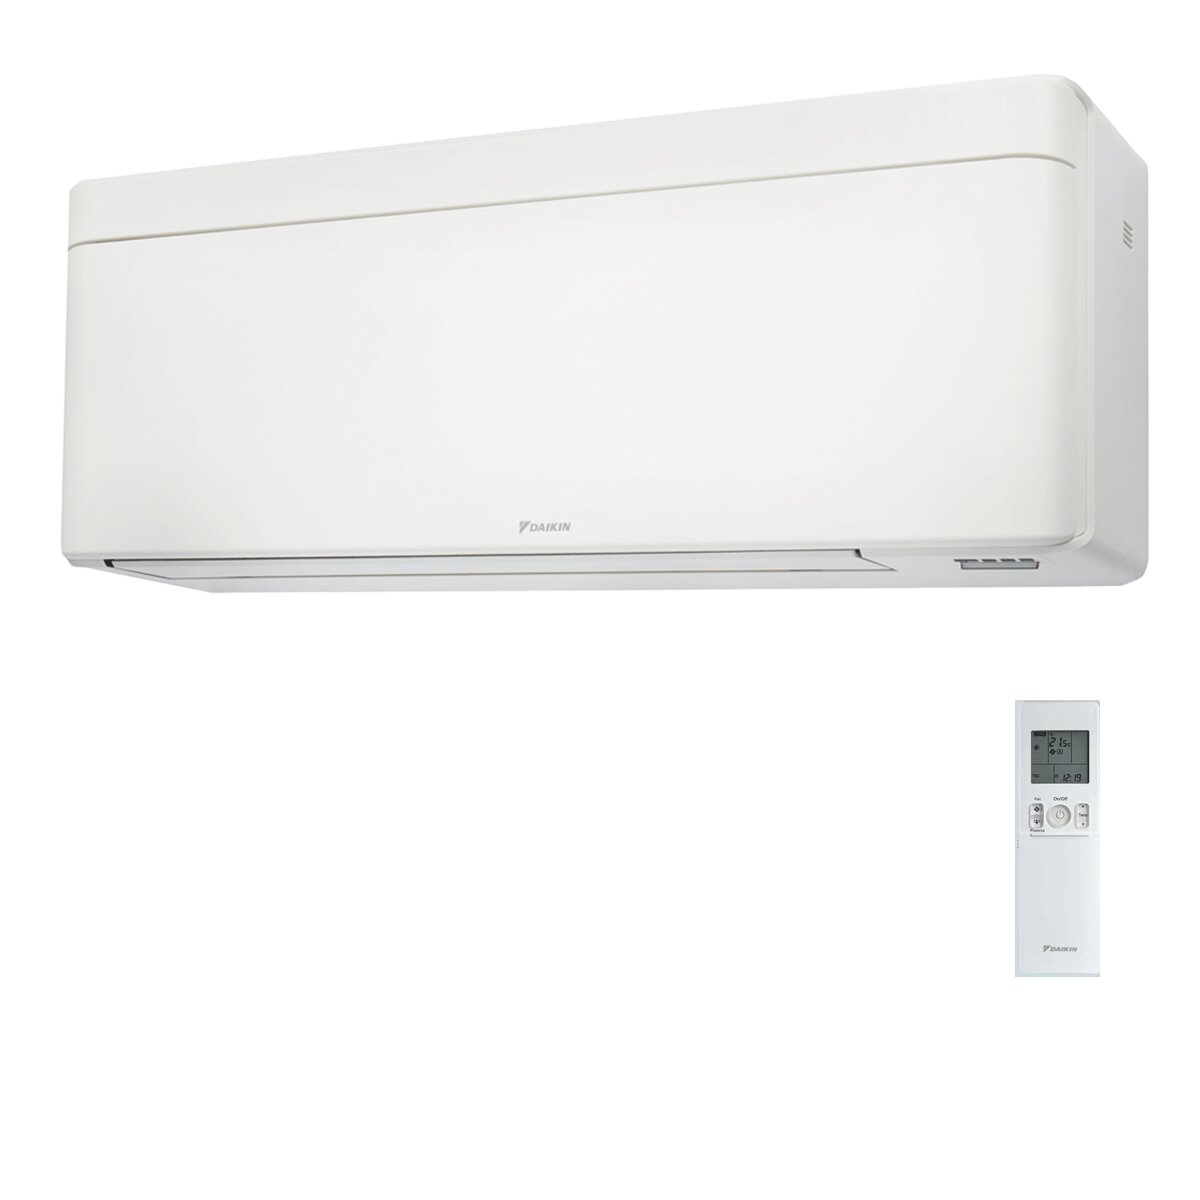 Daikin Stylish White trial split air conditioner 7000+9000+15000 BTU inverter A++ wifi external unit 6.8 kW